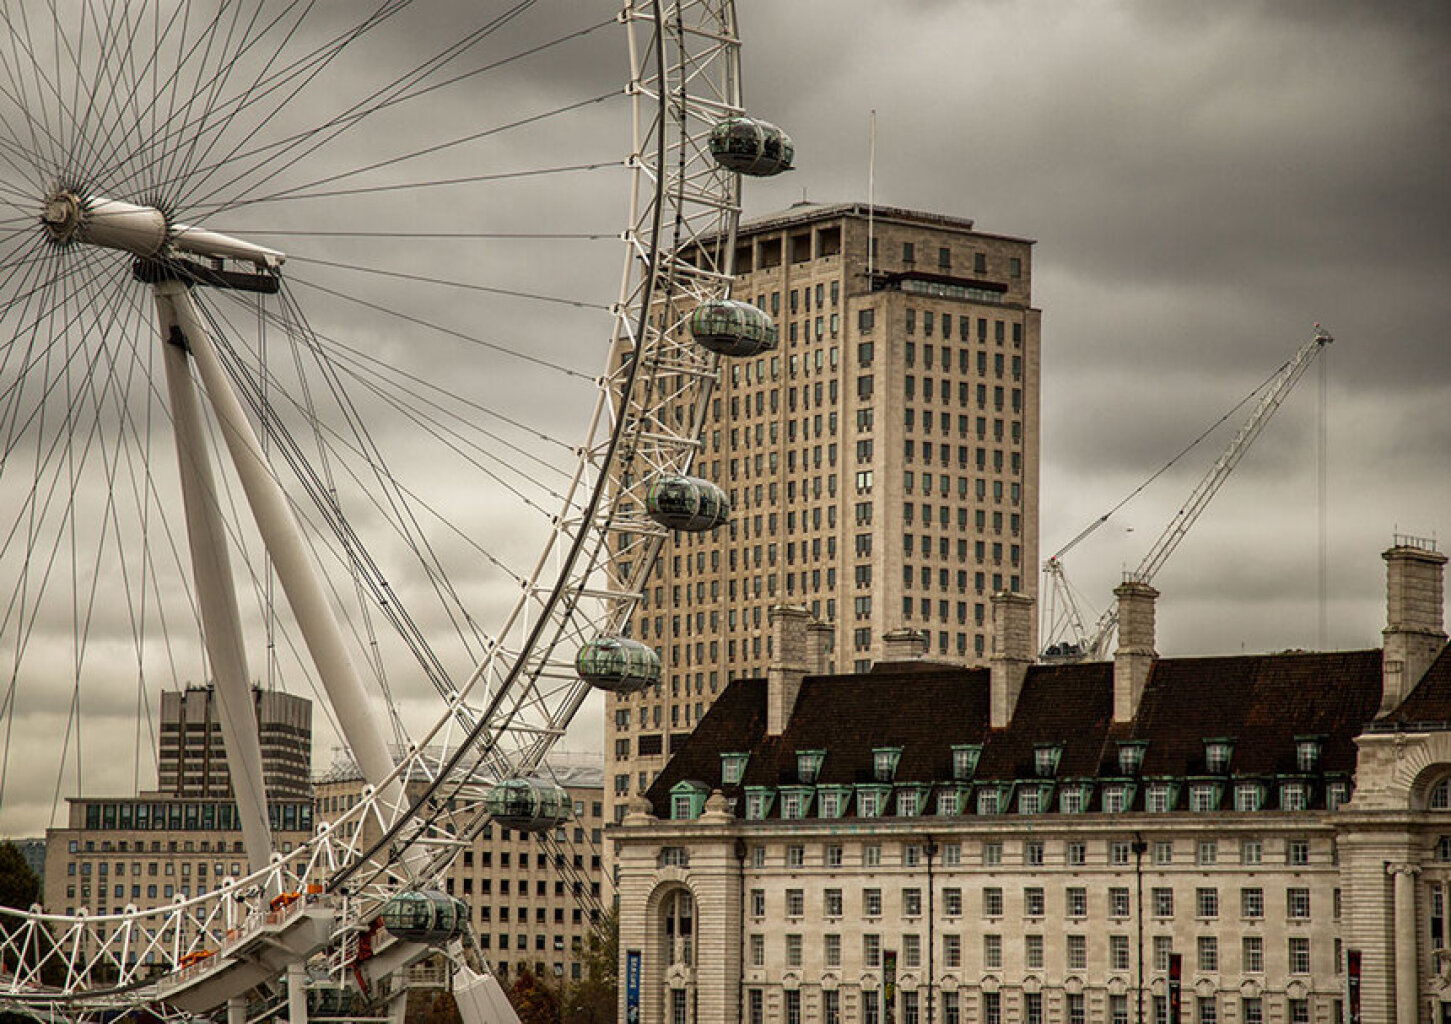 Quadro London View Color por Felipe Hoffmann -  CATEGORIAS